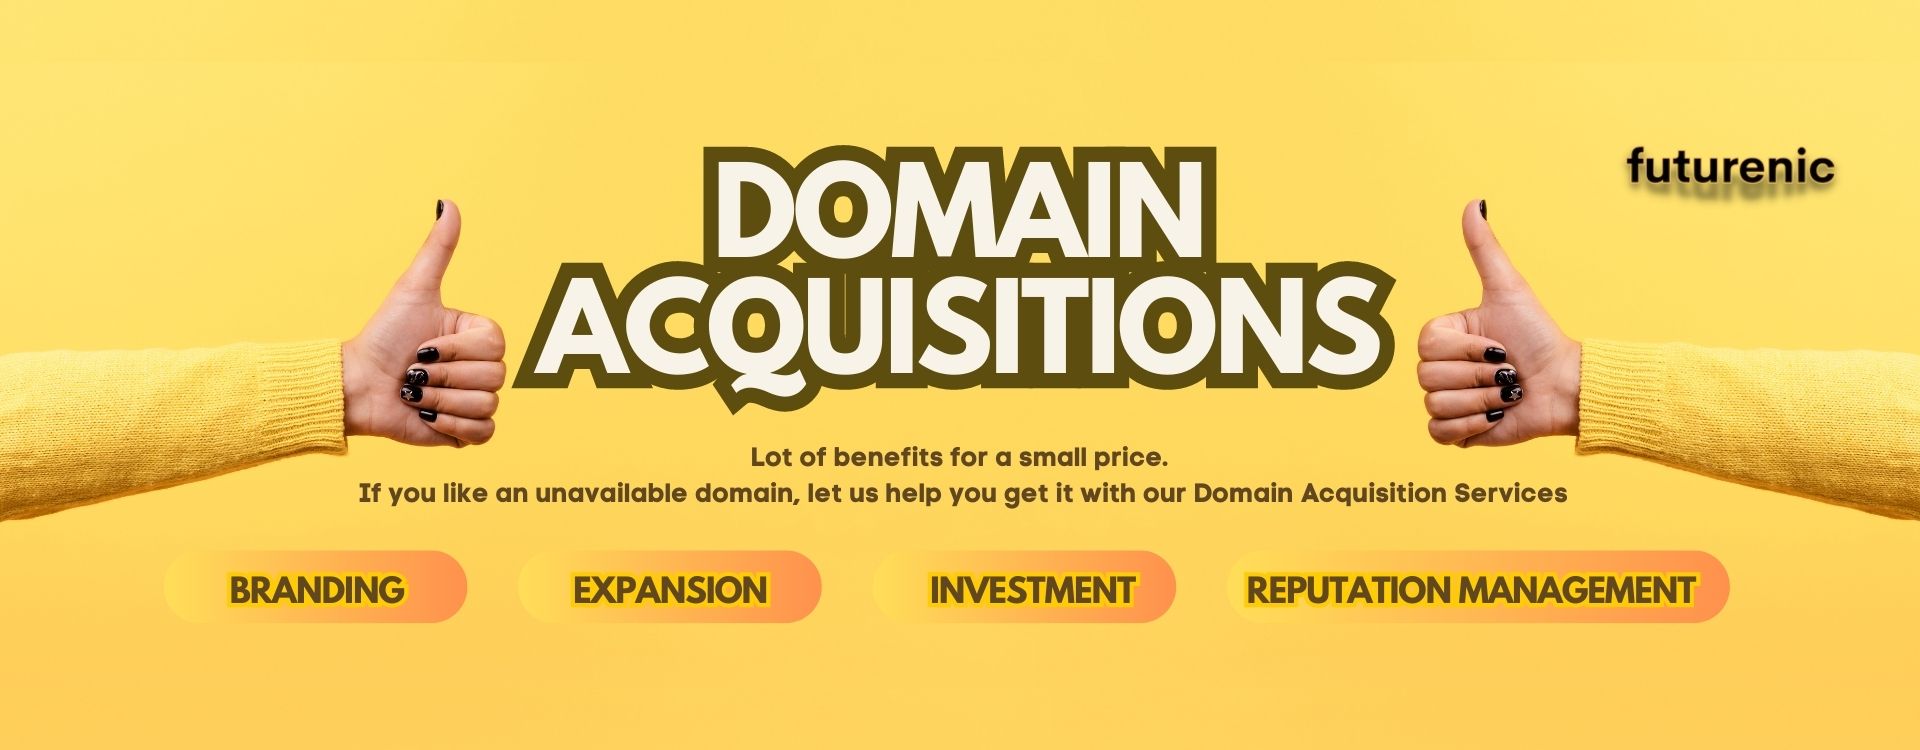 Domain Acquisition services